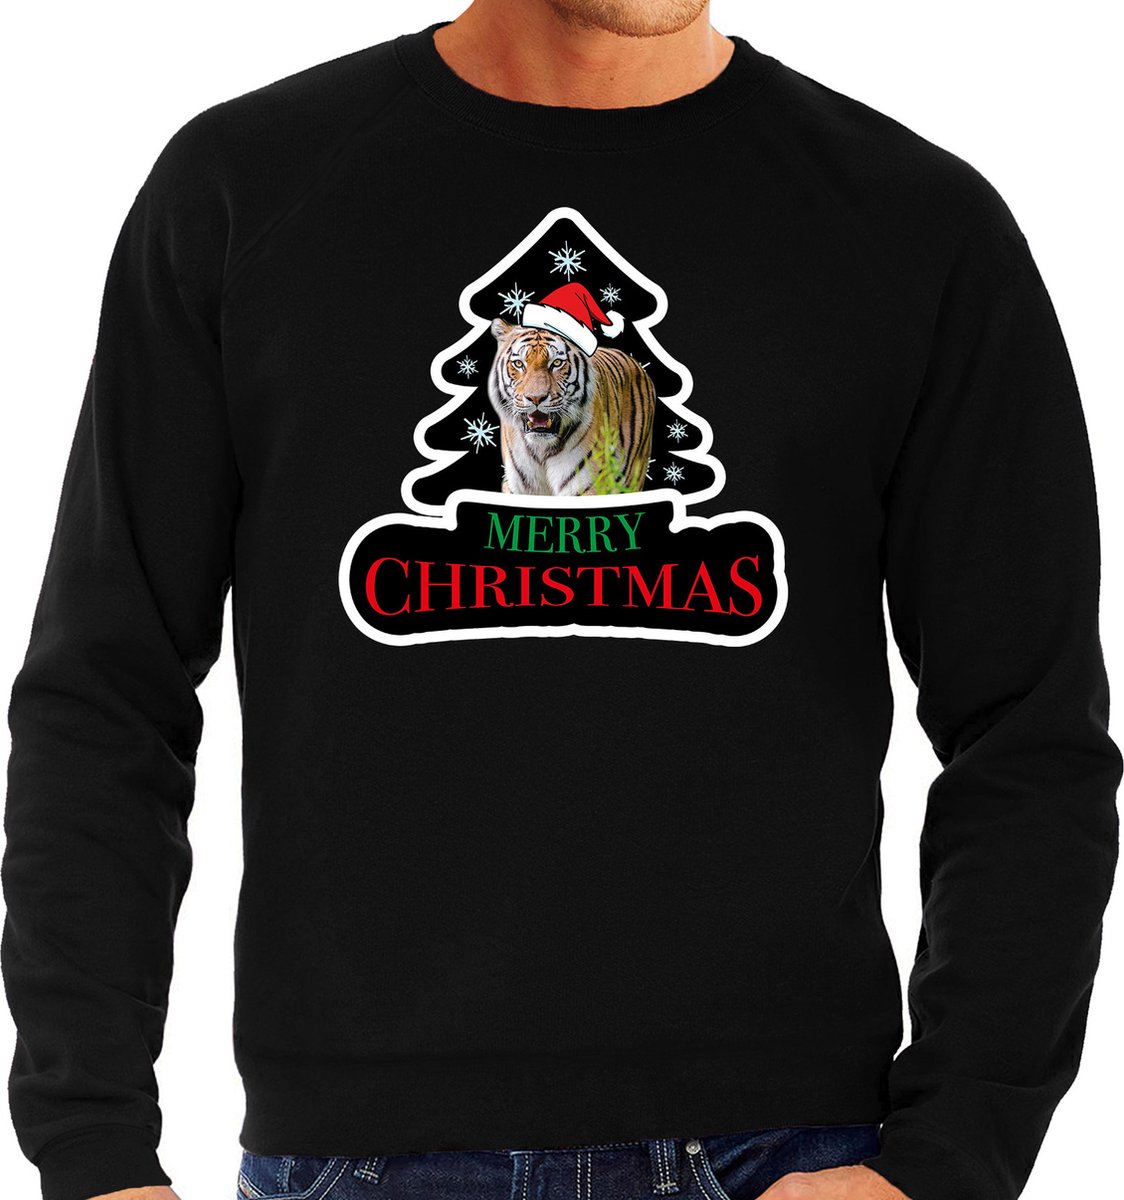 Dieren kersttrui tijger zwart heren - Foute tijgers kerstsweater - Kerst outfit dieren liefhebber M